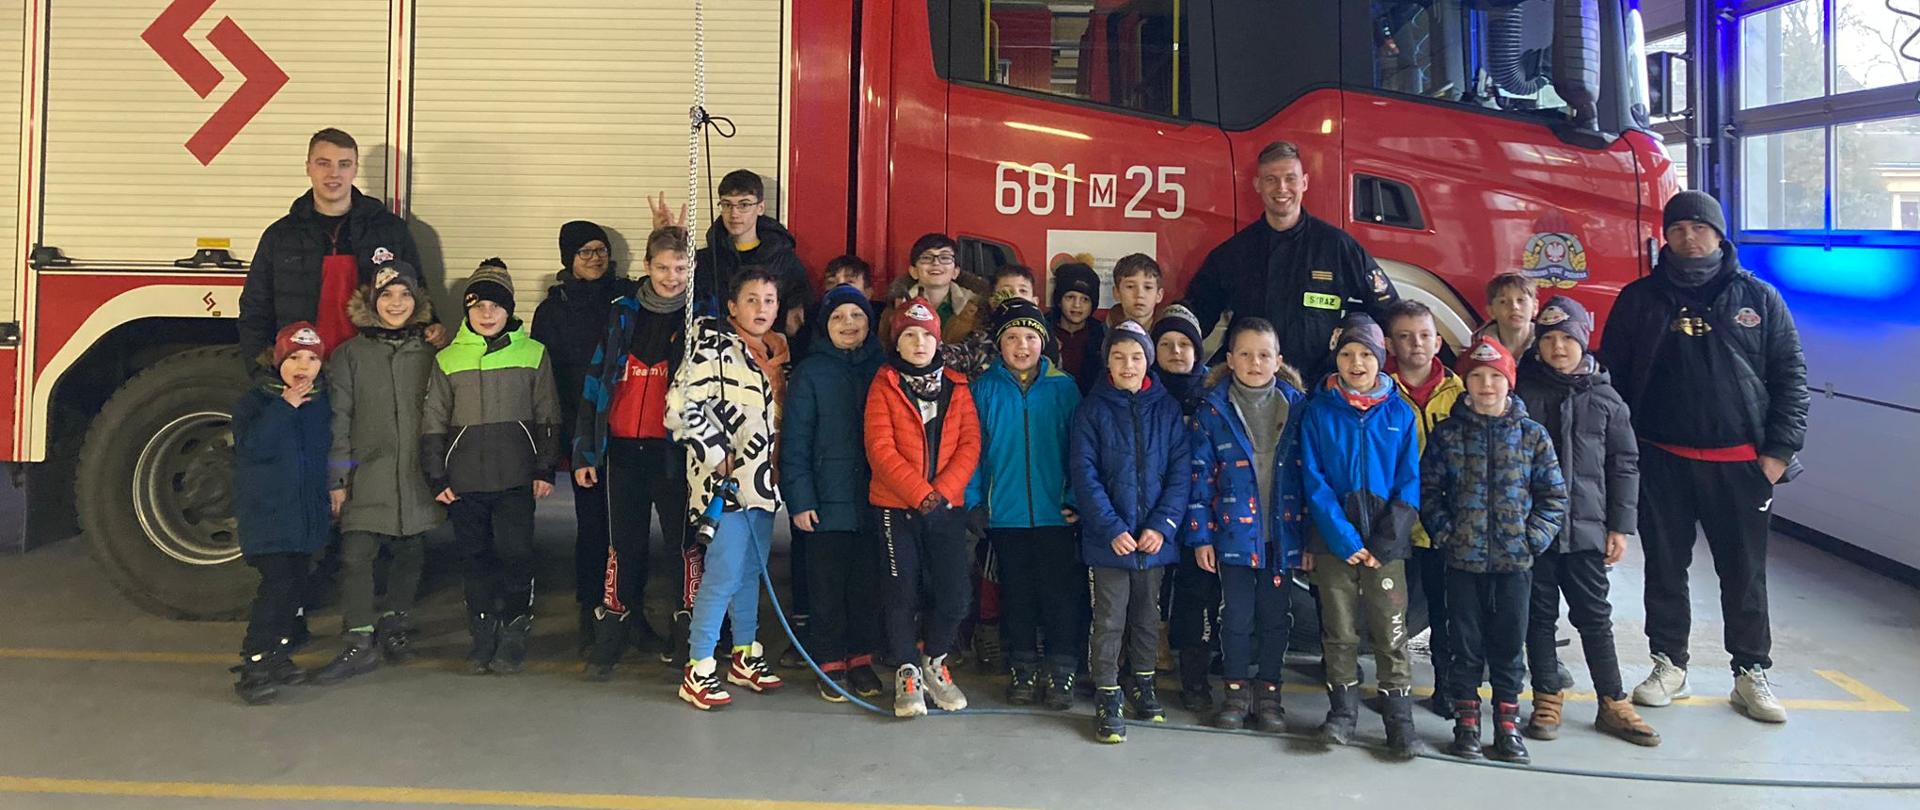 Zdjęcie przedstawia grupę dzieci stojącą na tle samochodu strażackiego. Pośród najmłodszych stroją strażacy. Auto ustawione jest w garażu. Wraz z dziećmi stoją ich opiekunowie. Wszyscy mają uśmiechnięte twarze.